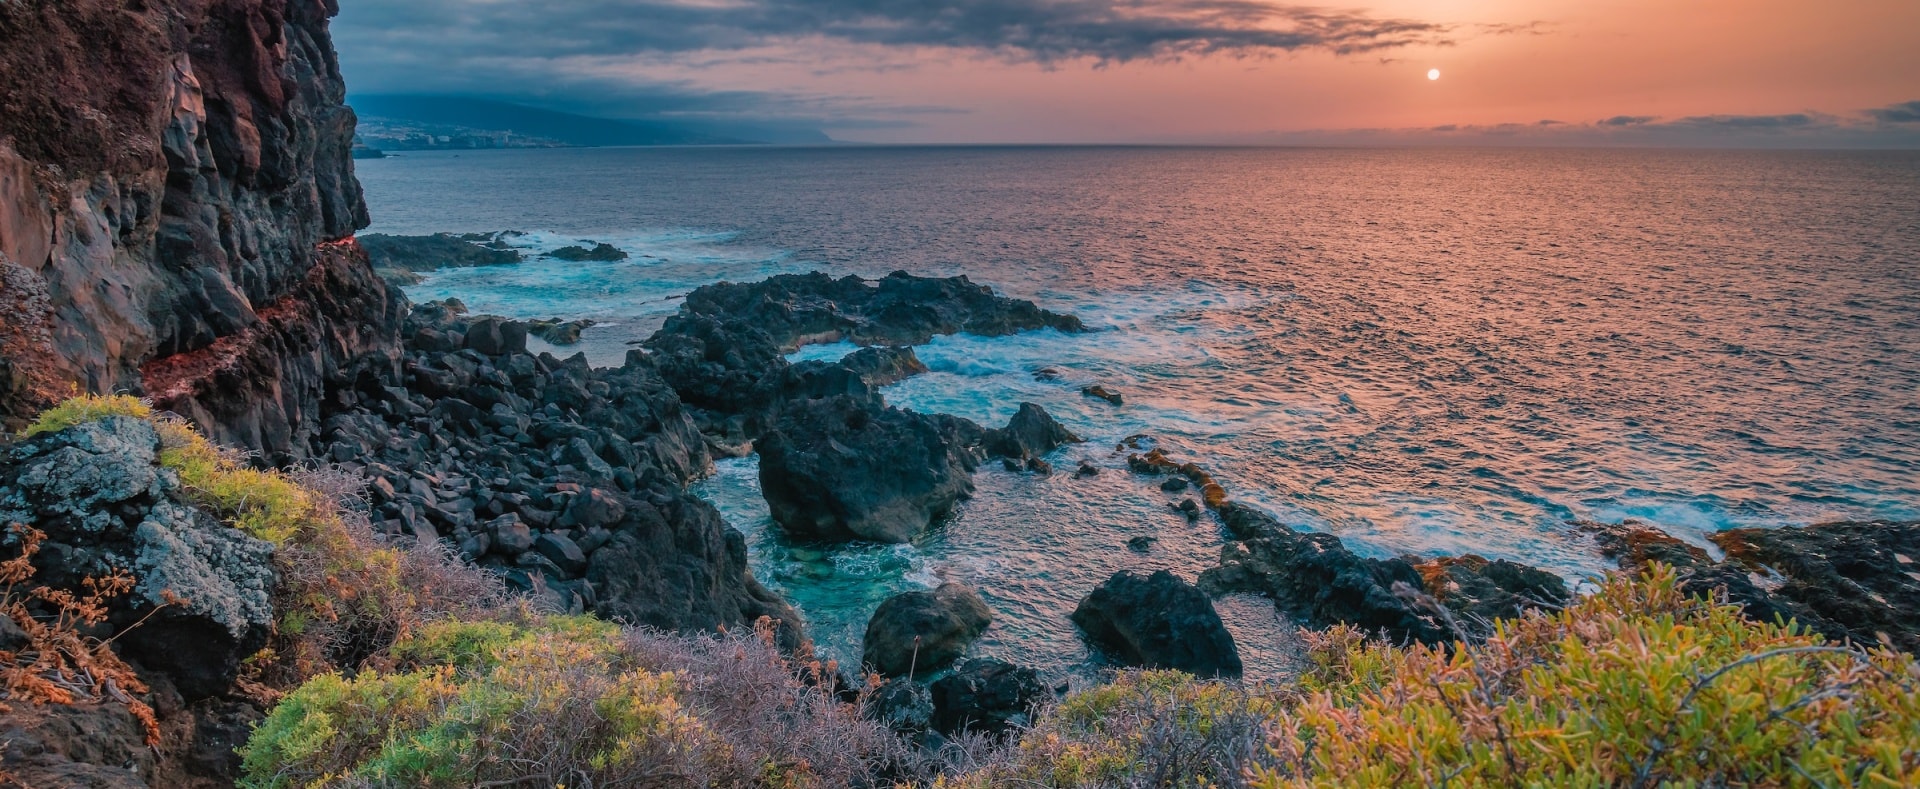 Tenerife: L'isola perfetta per una vacanza all'insegna dell'avventura